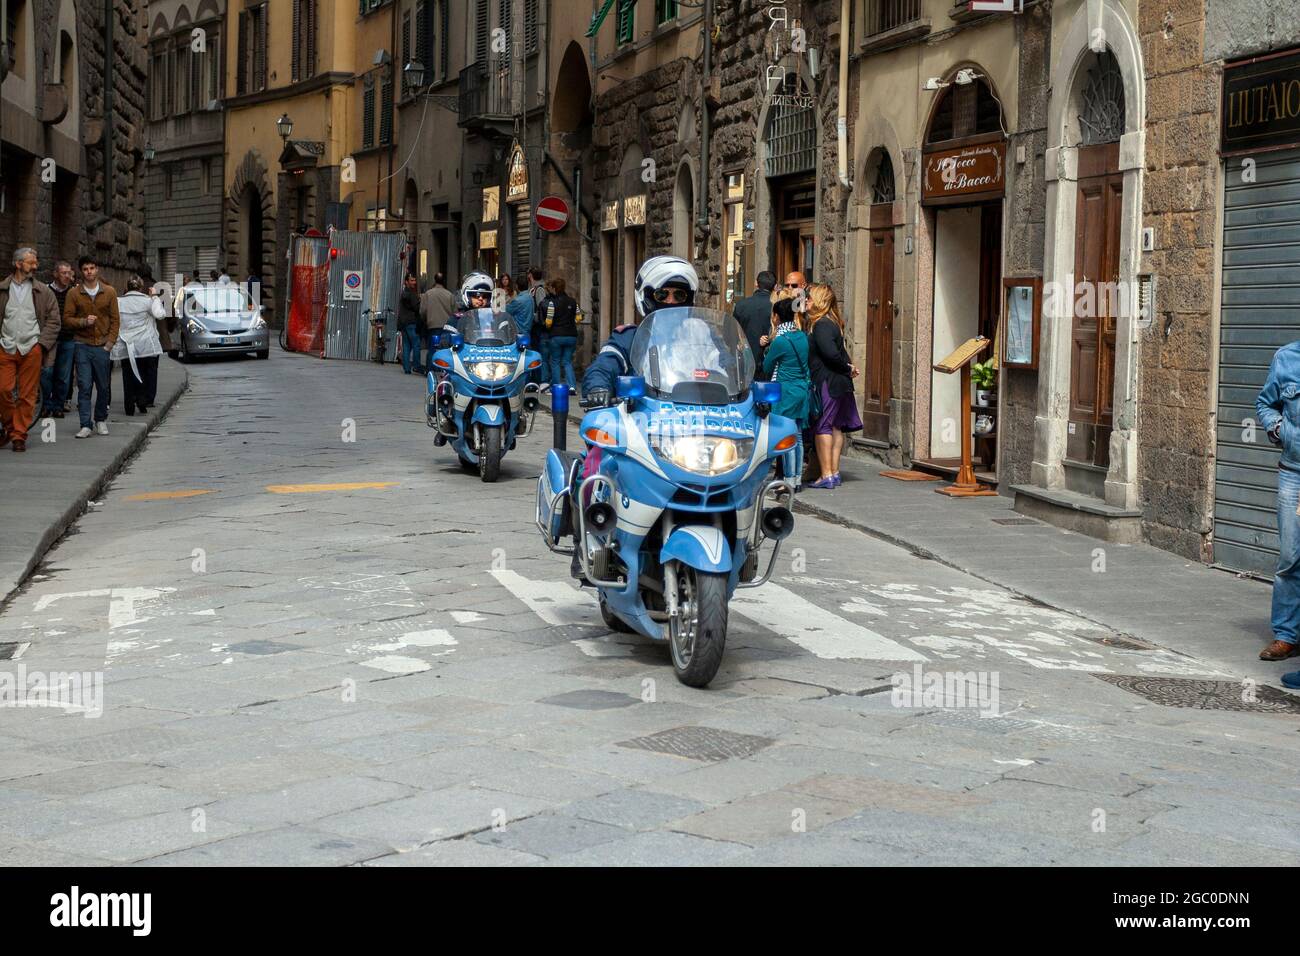 Firenze, Italia - 8 maggio 2010: BMW R1150RT motociclette di polizia italiana in una strada trafficata a Firenze. Foto Stock